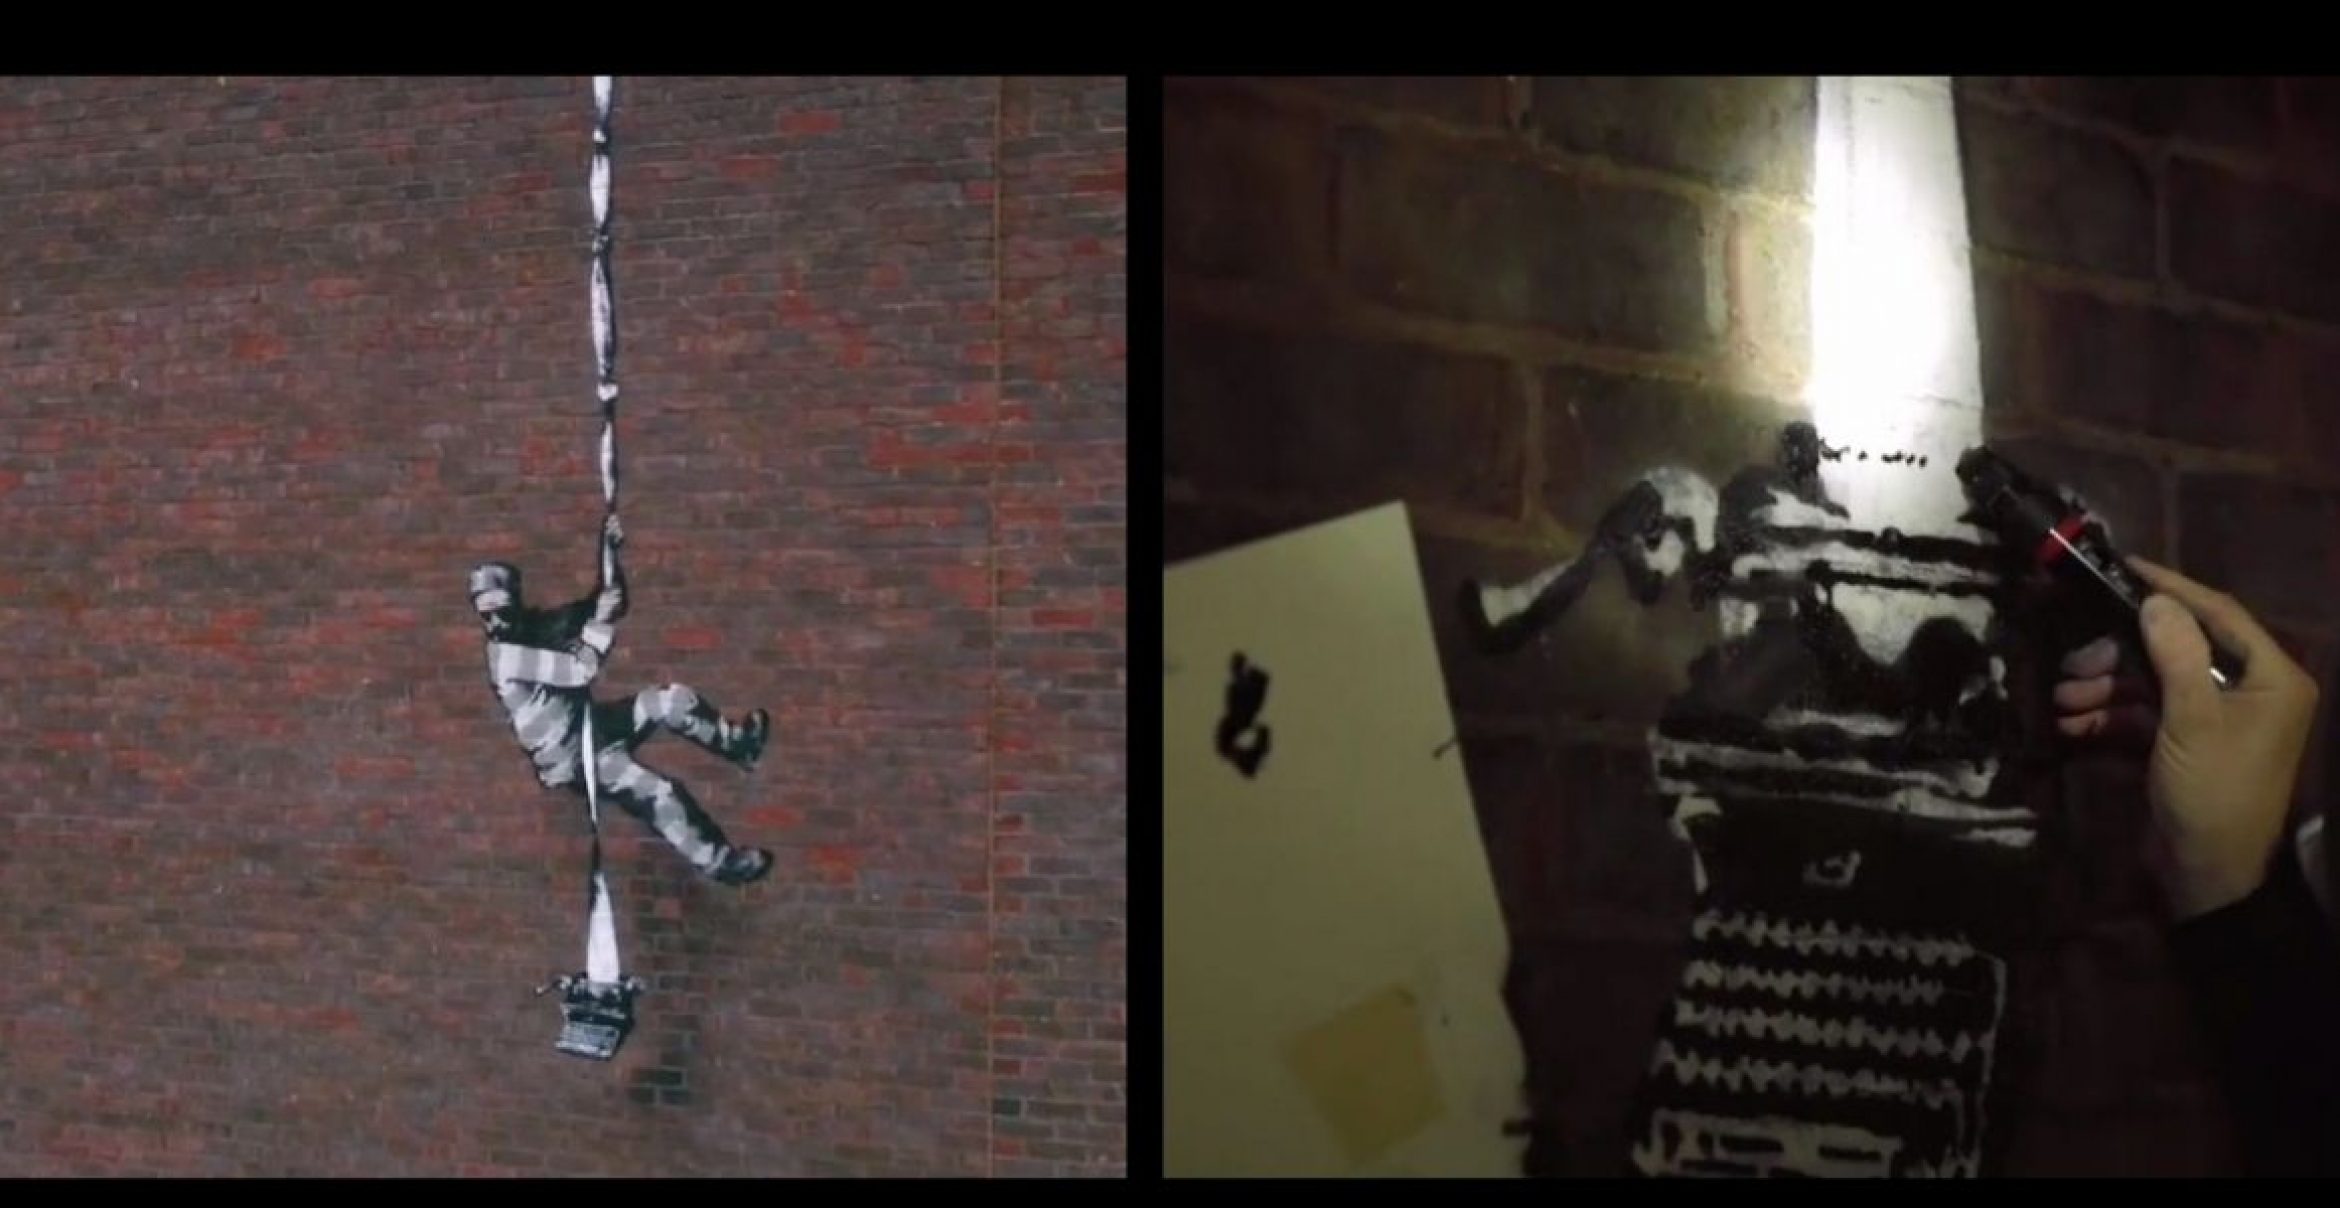 Neues Werk von Banksy: Künstler gibt Einblick hinter die Kulissen